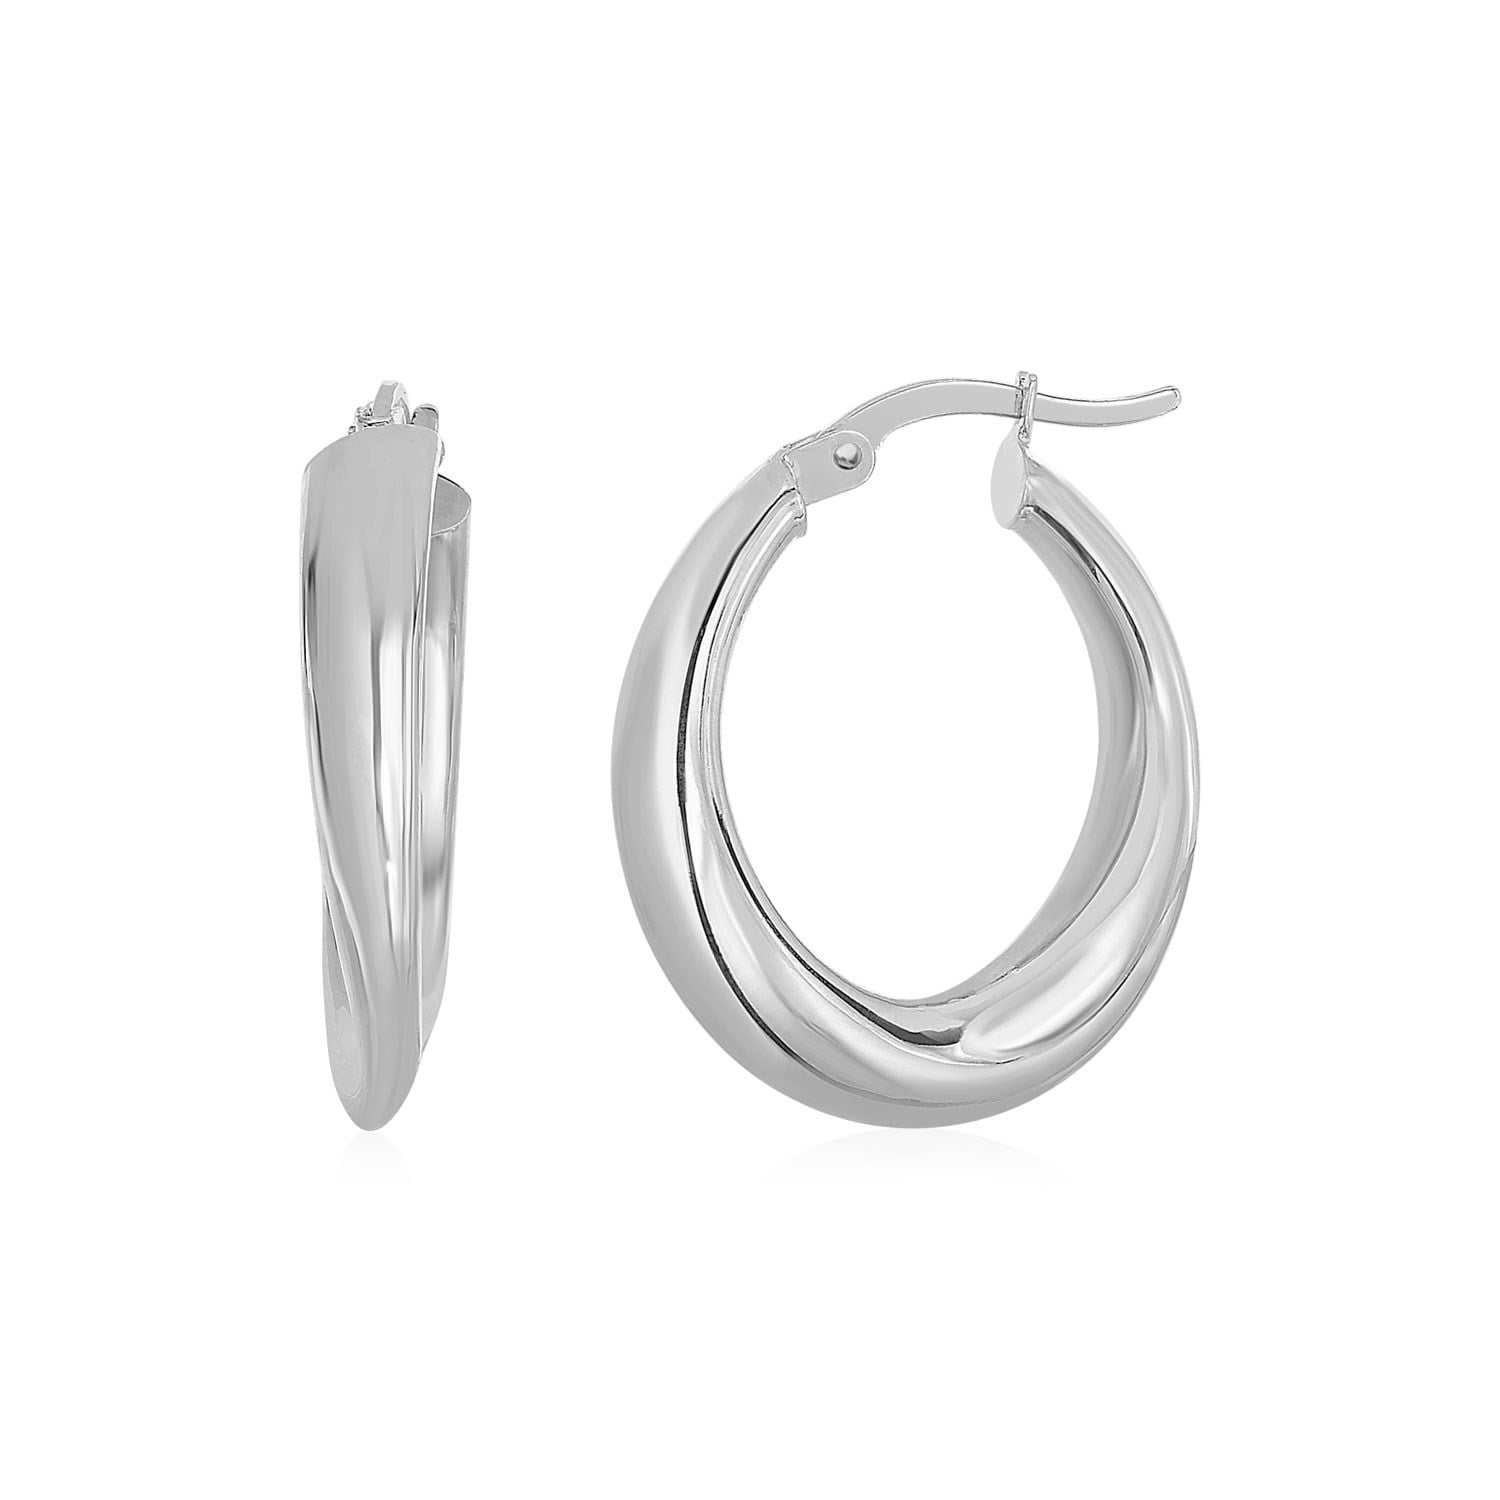 August Forever Silver Austrian Crystal Birthstone 15mm Full Hoop Earrings Surgical Steel Posts